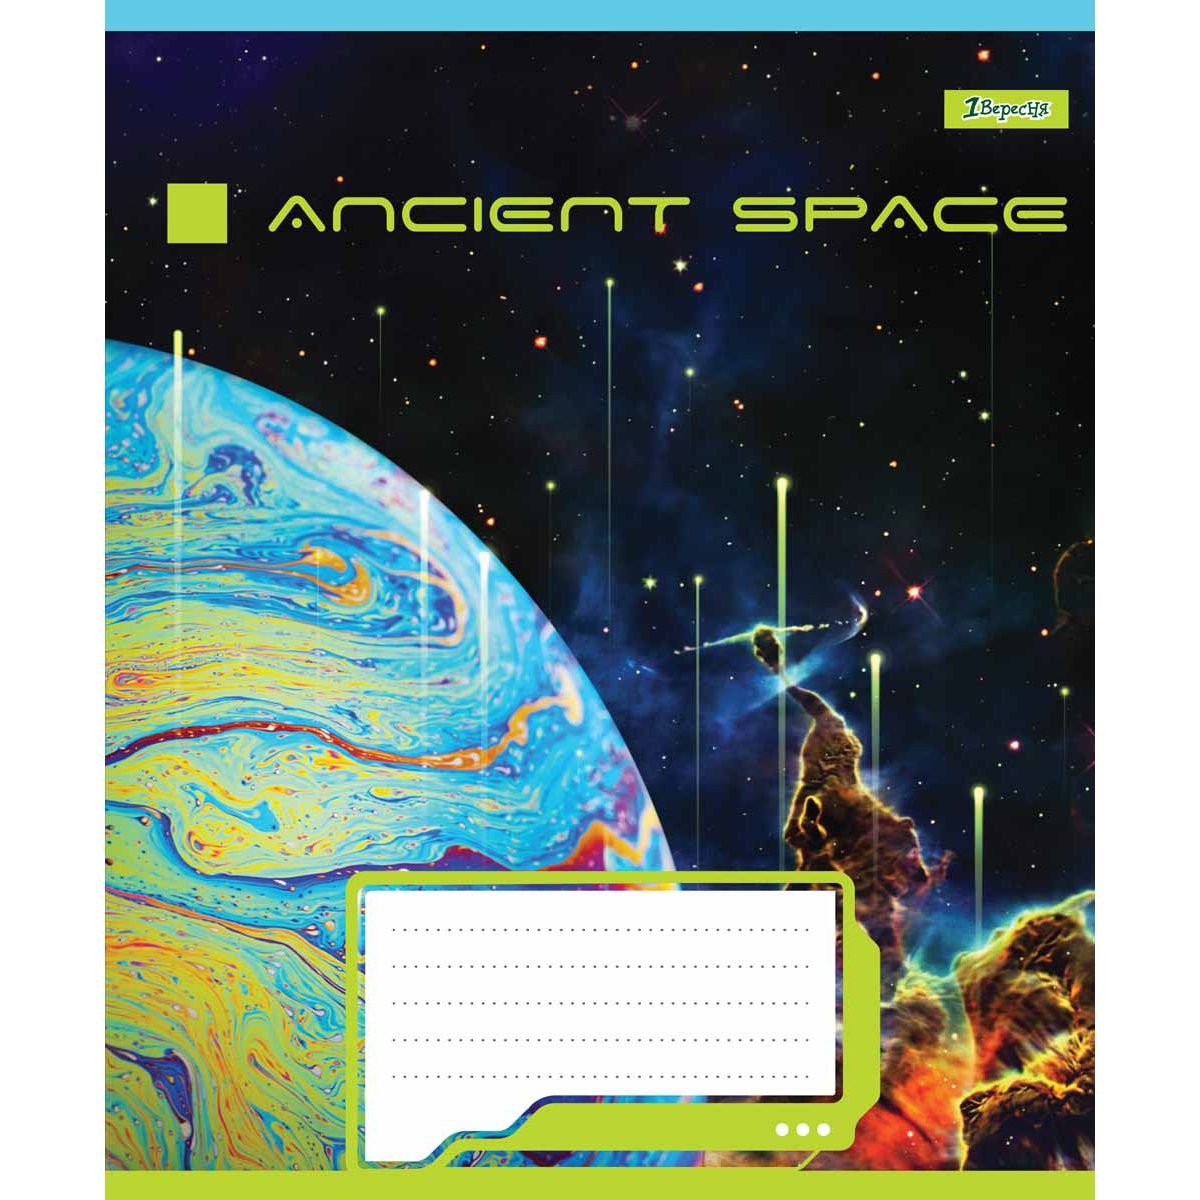 Тетрадь общая 1 Вересня Ancient Space, A5, в линию, 60 листов - фото 2